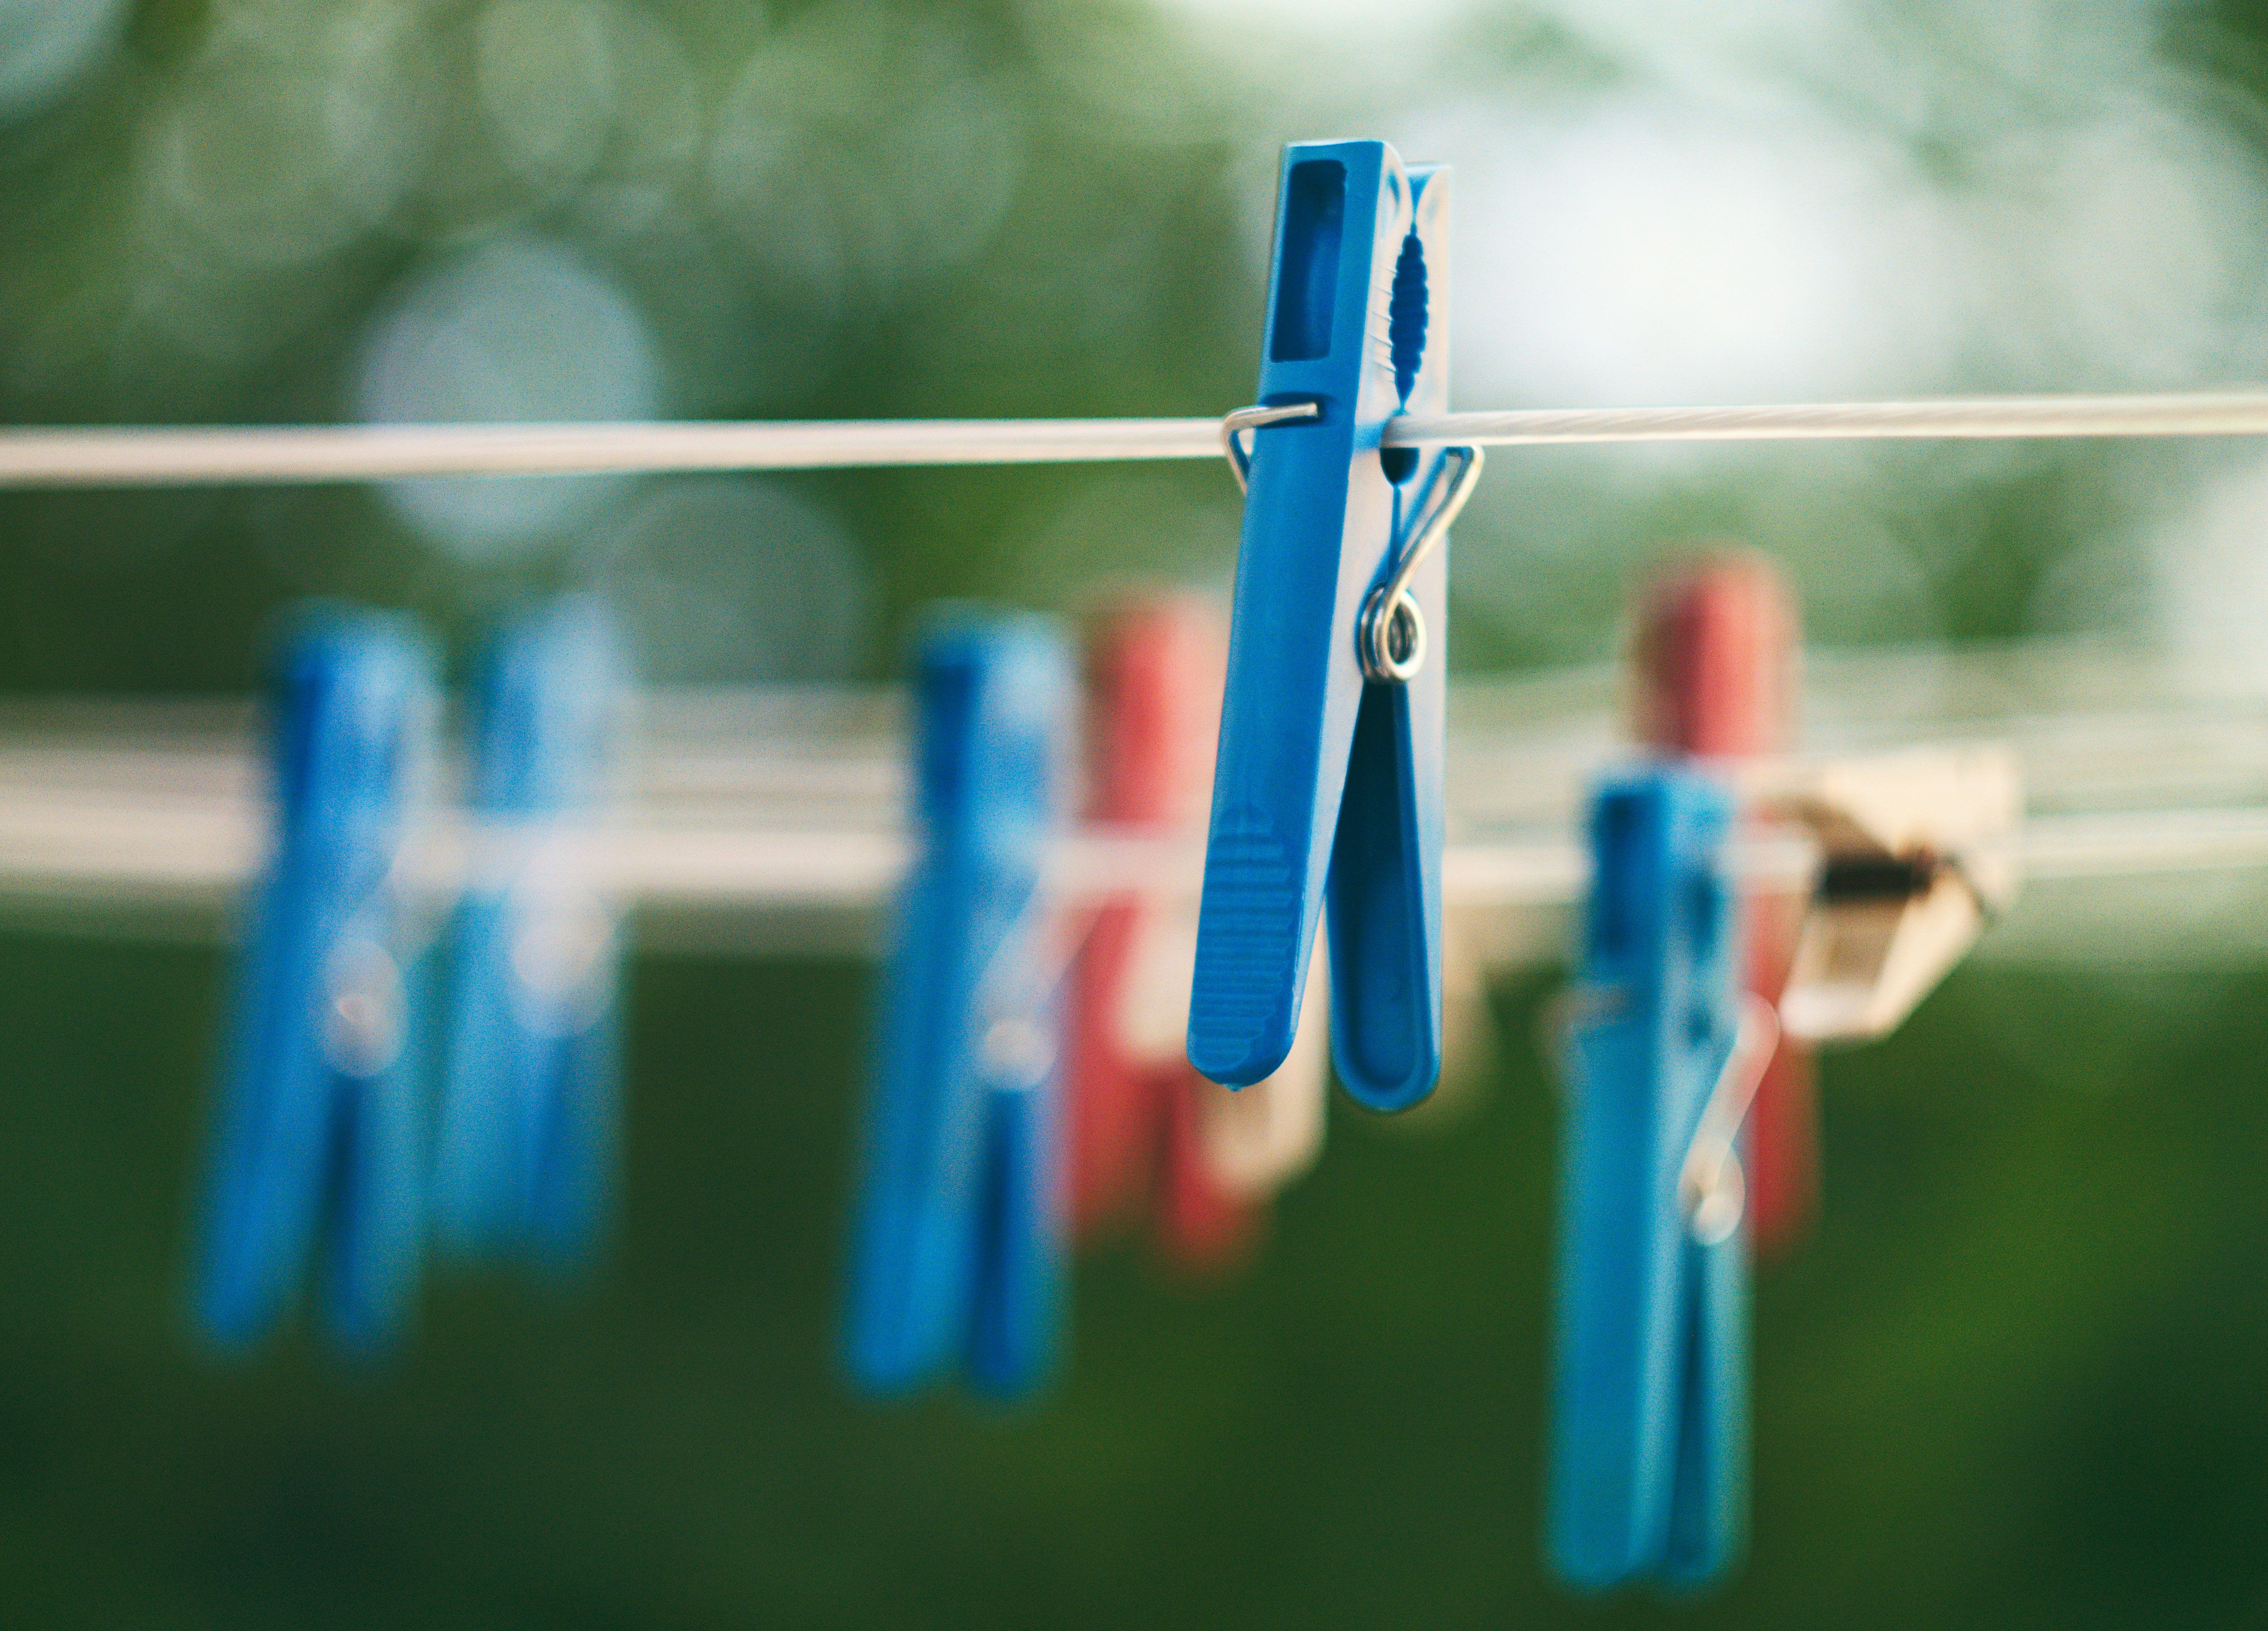 Wasch-Tipp: Handtücher direkt nach dem Waschen aufhängen